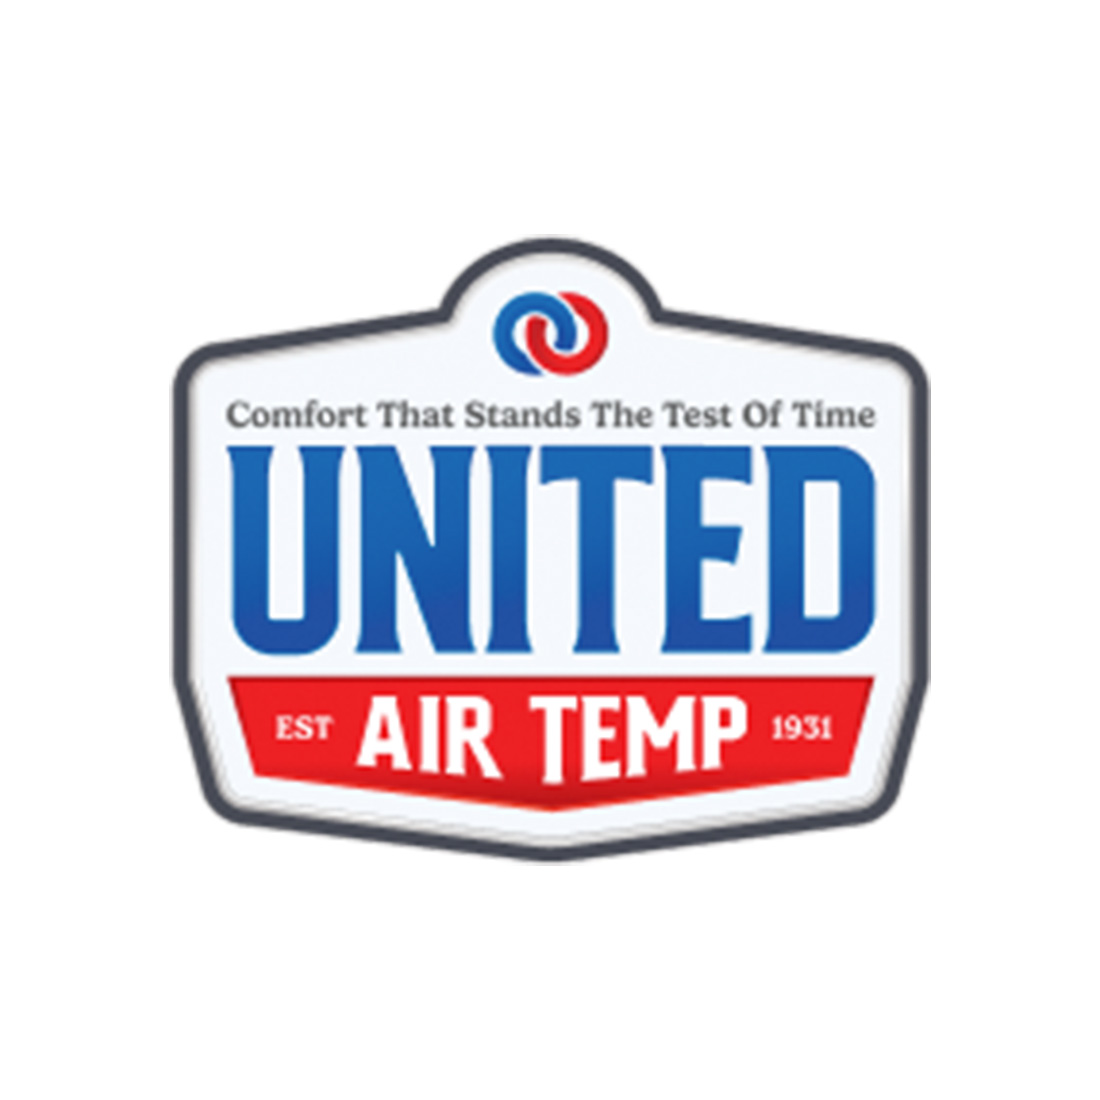 United Air Temp